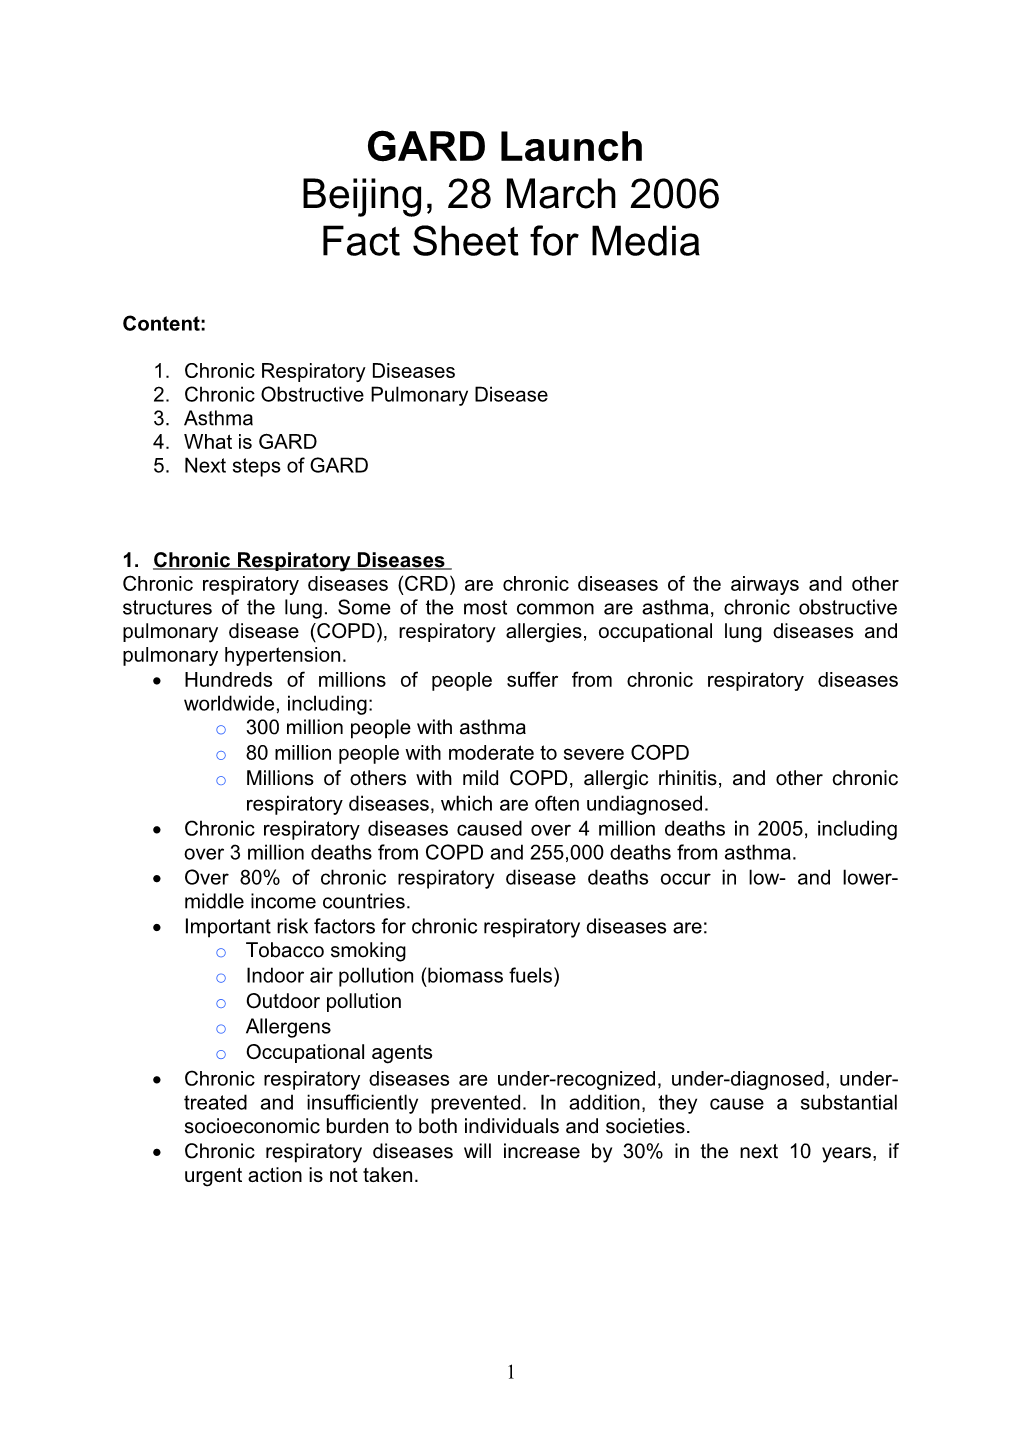 Fact Sheet for Media